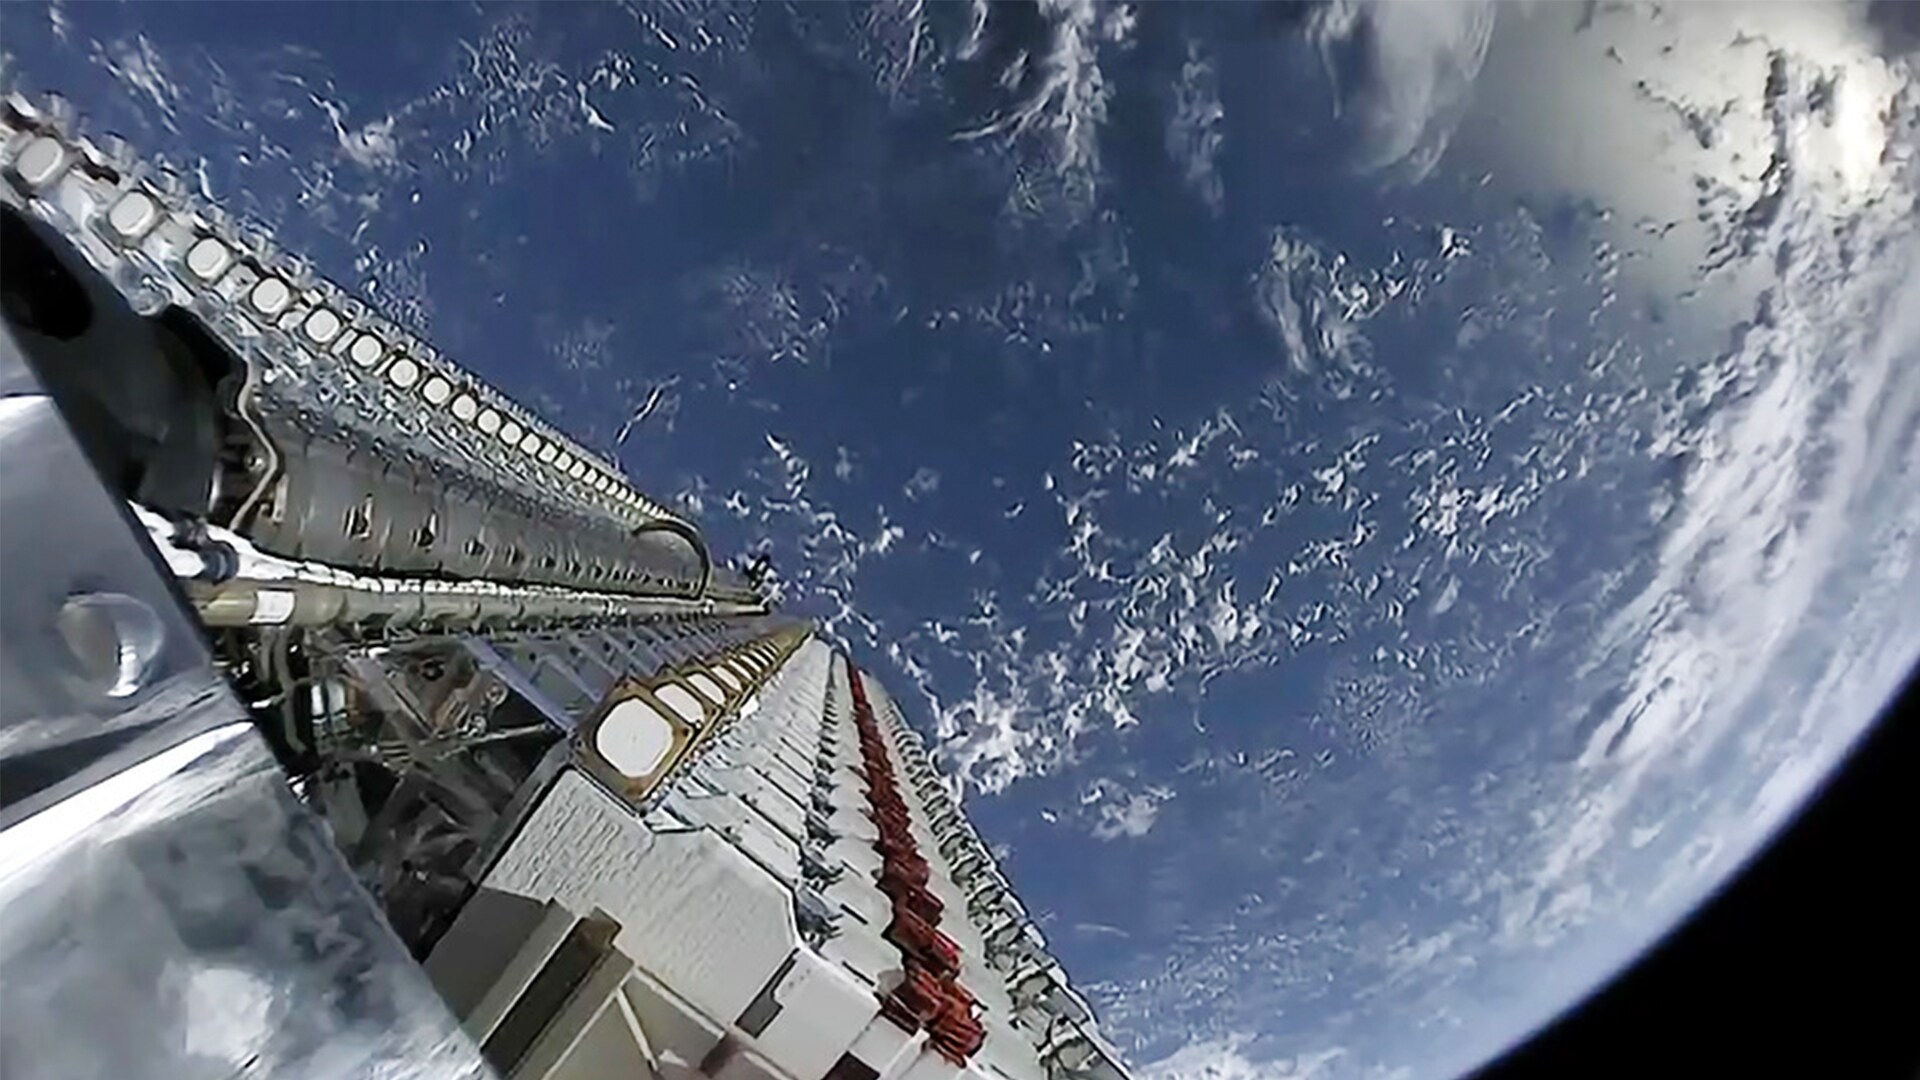 SpaceX ایلان ماسک بیش از ۱۰۰ ماهواره Starlink را به دلیل نقص فنی از مدار خارج می کند.